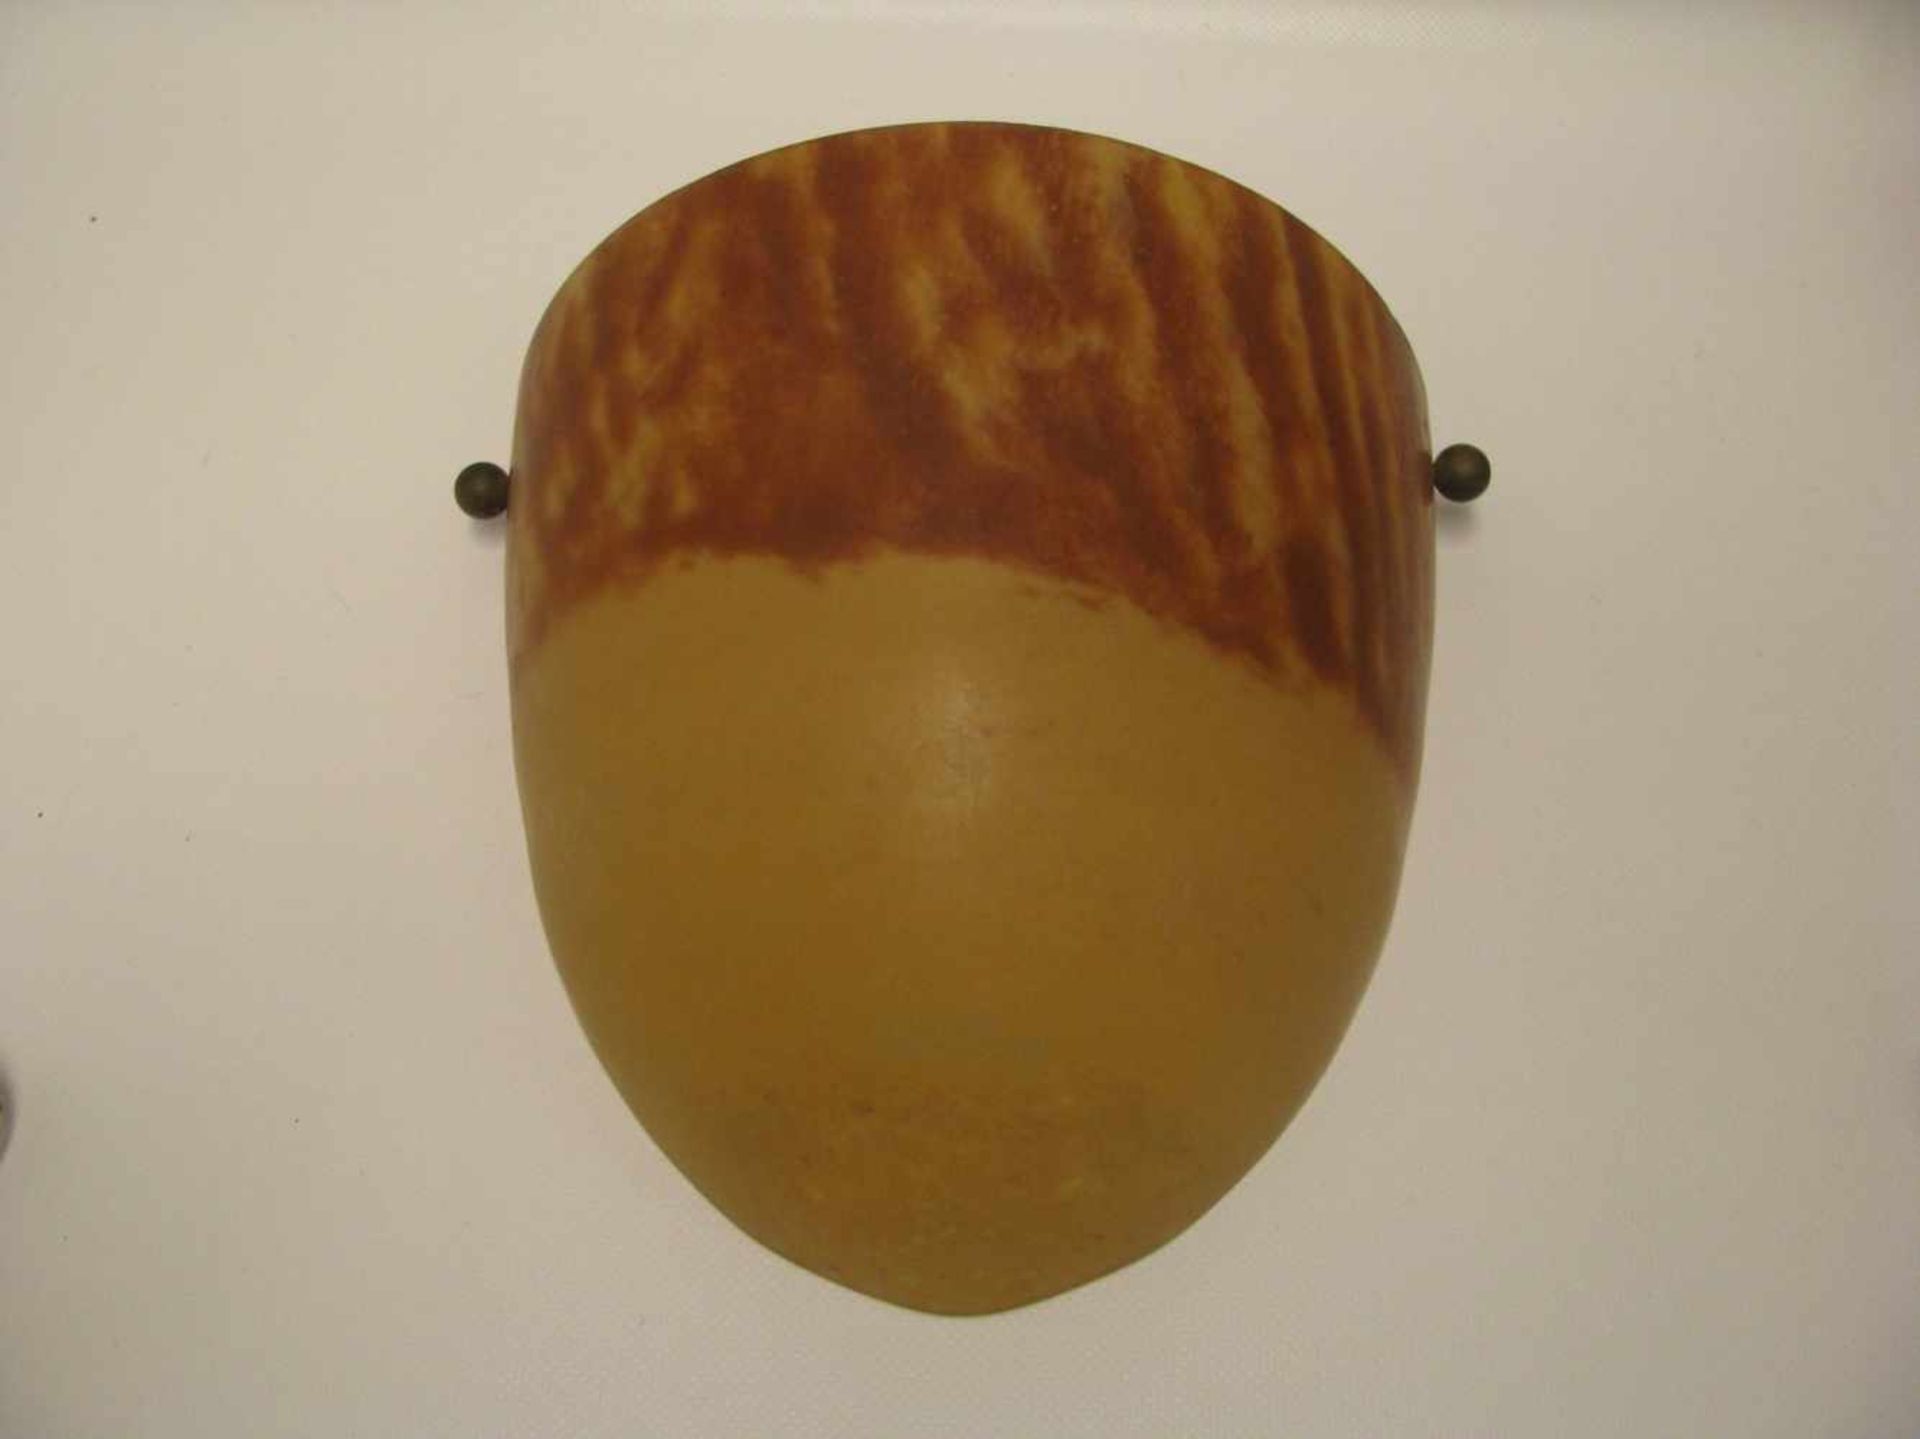 Wandlampe, Art déco-Manier, orange-bräunliches Überfangglas, 22 x 24,5 x 11,5 cm.<br